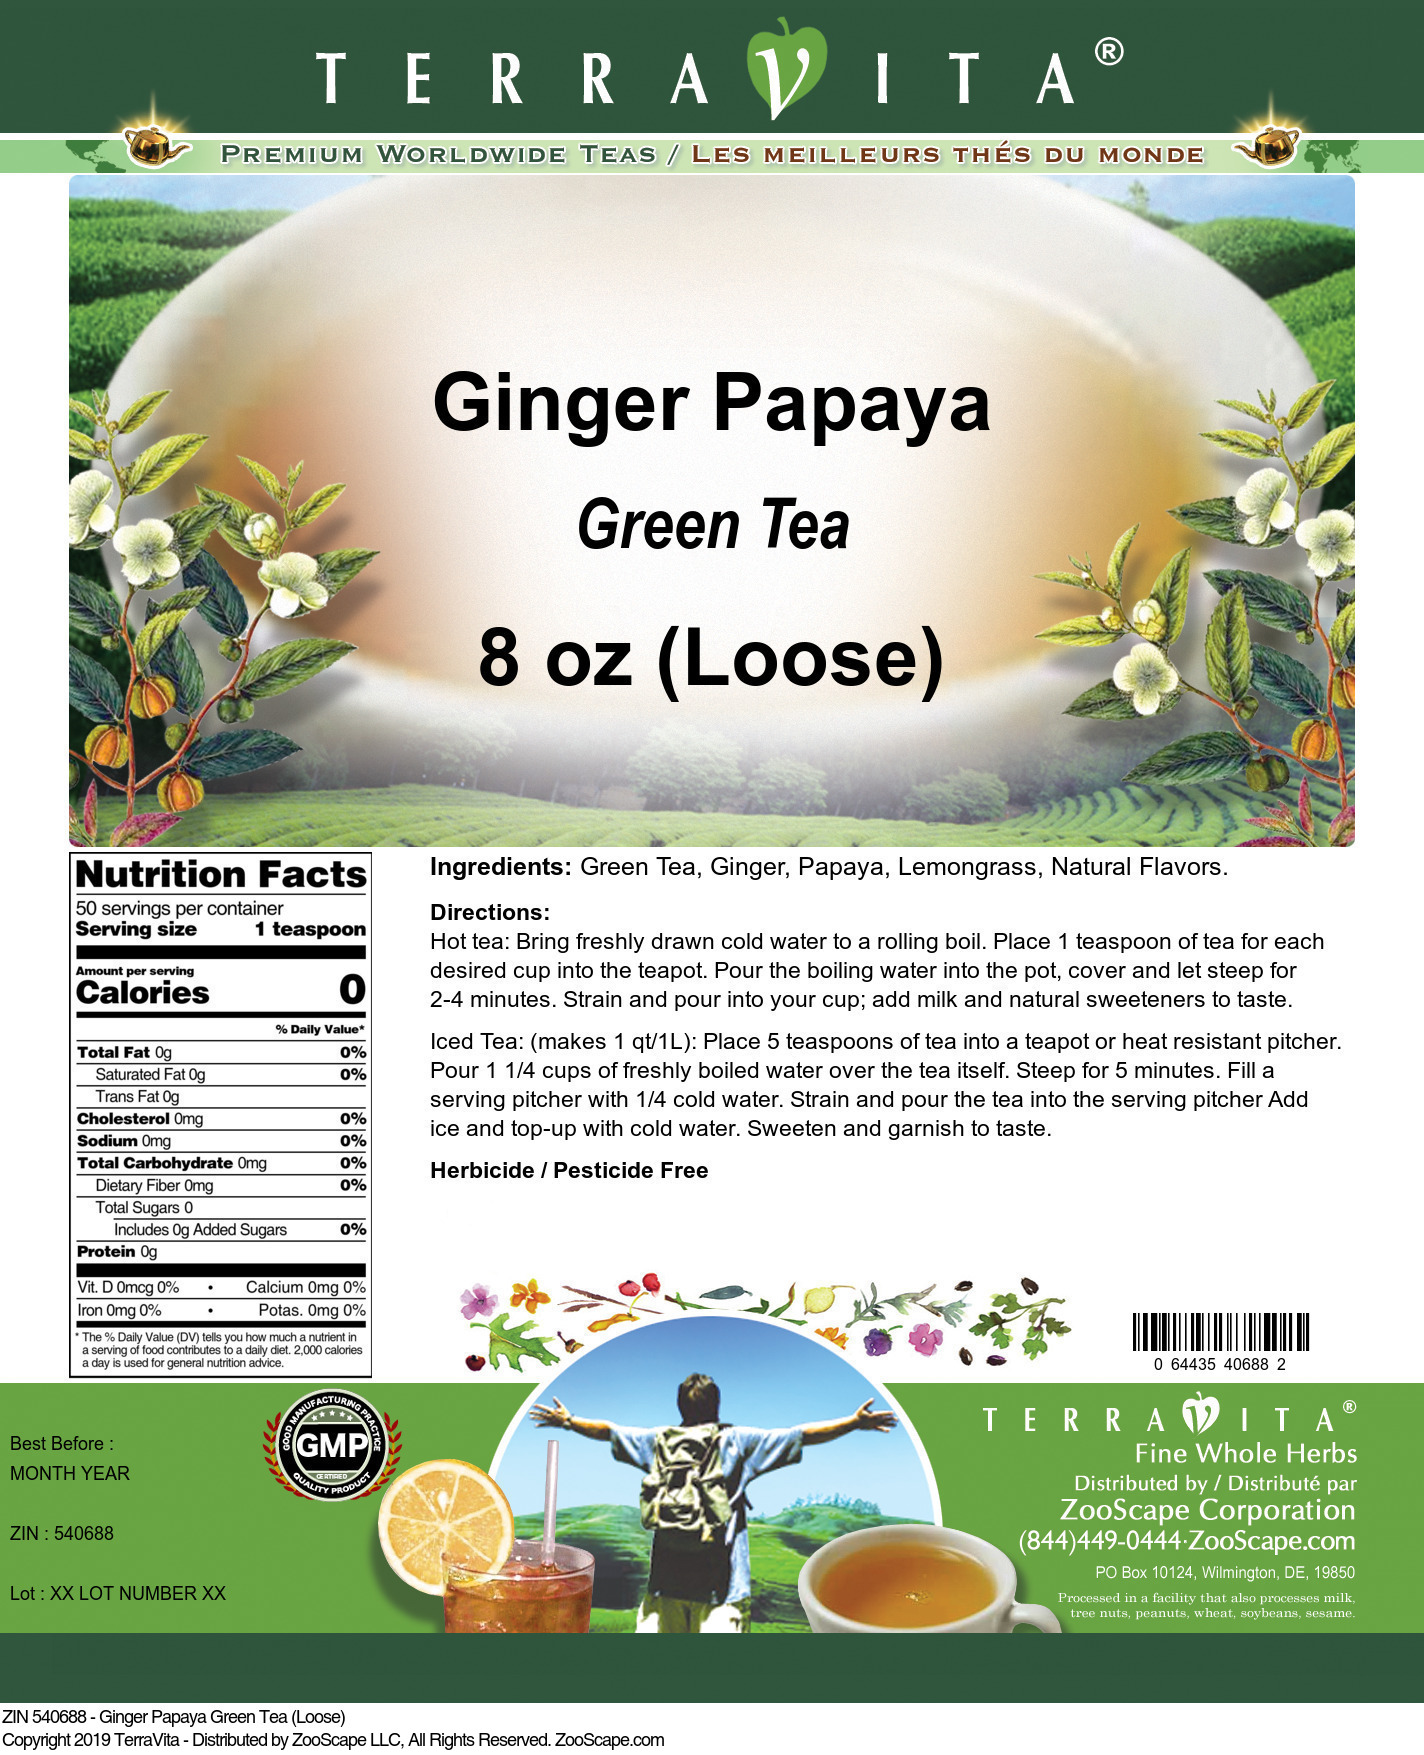 Ginger Papaya Green Tea (Loose) - Label